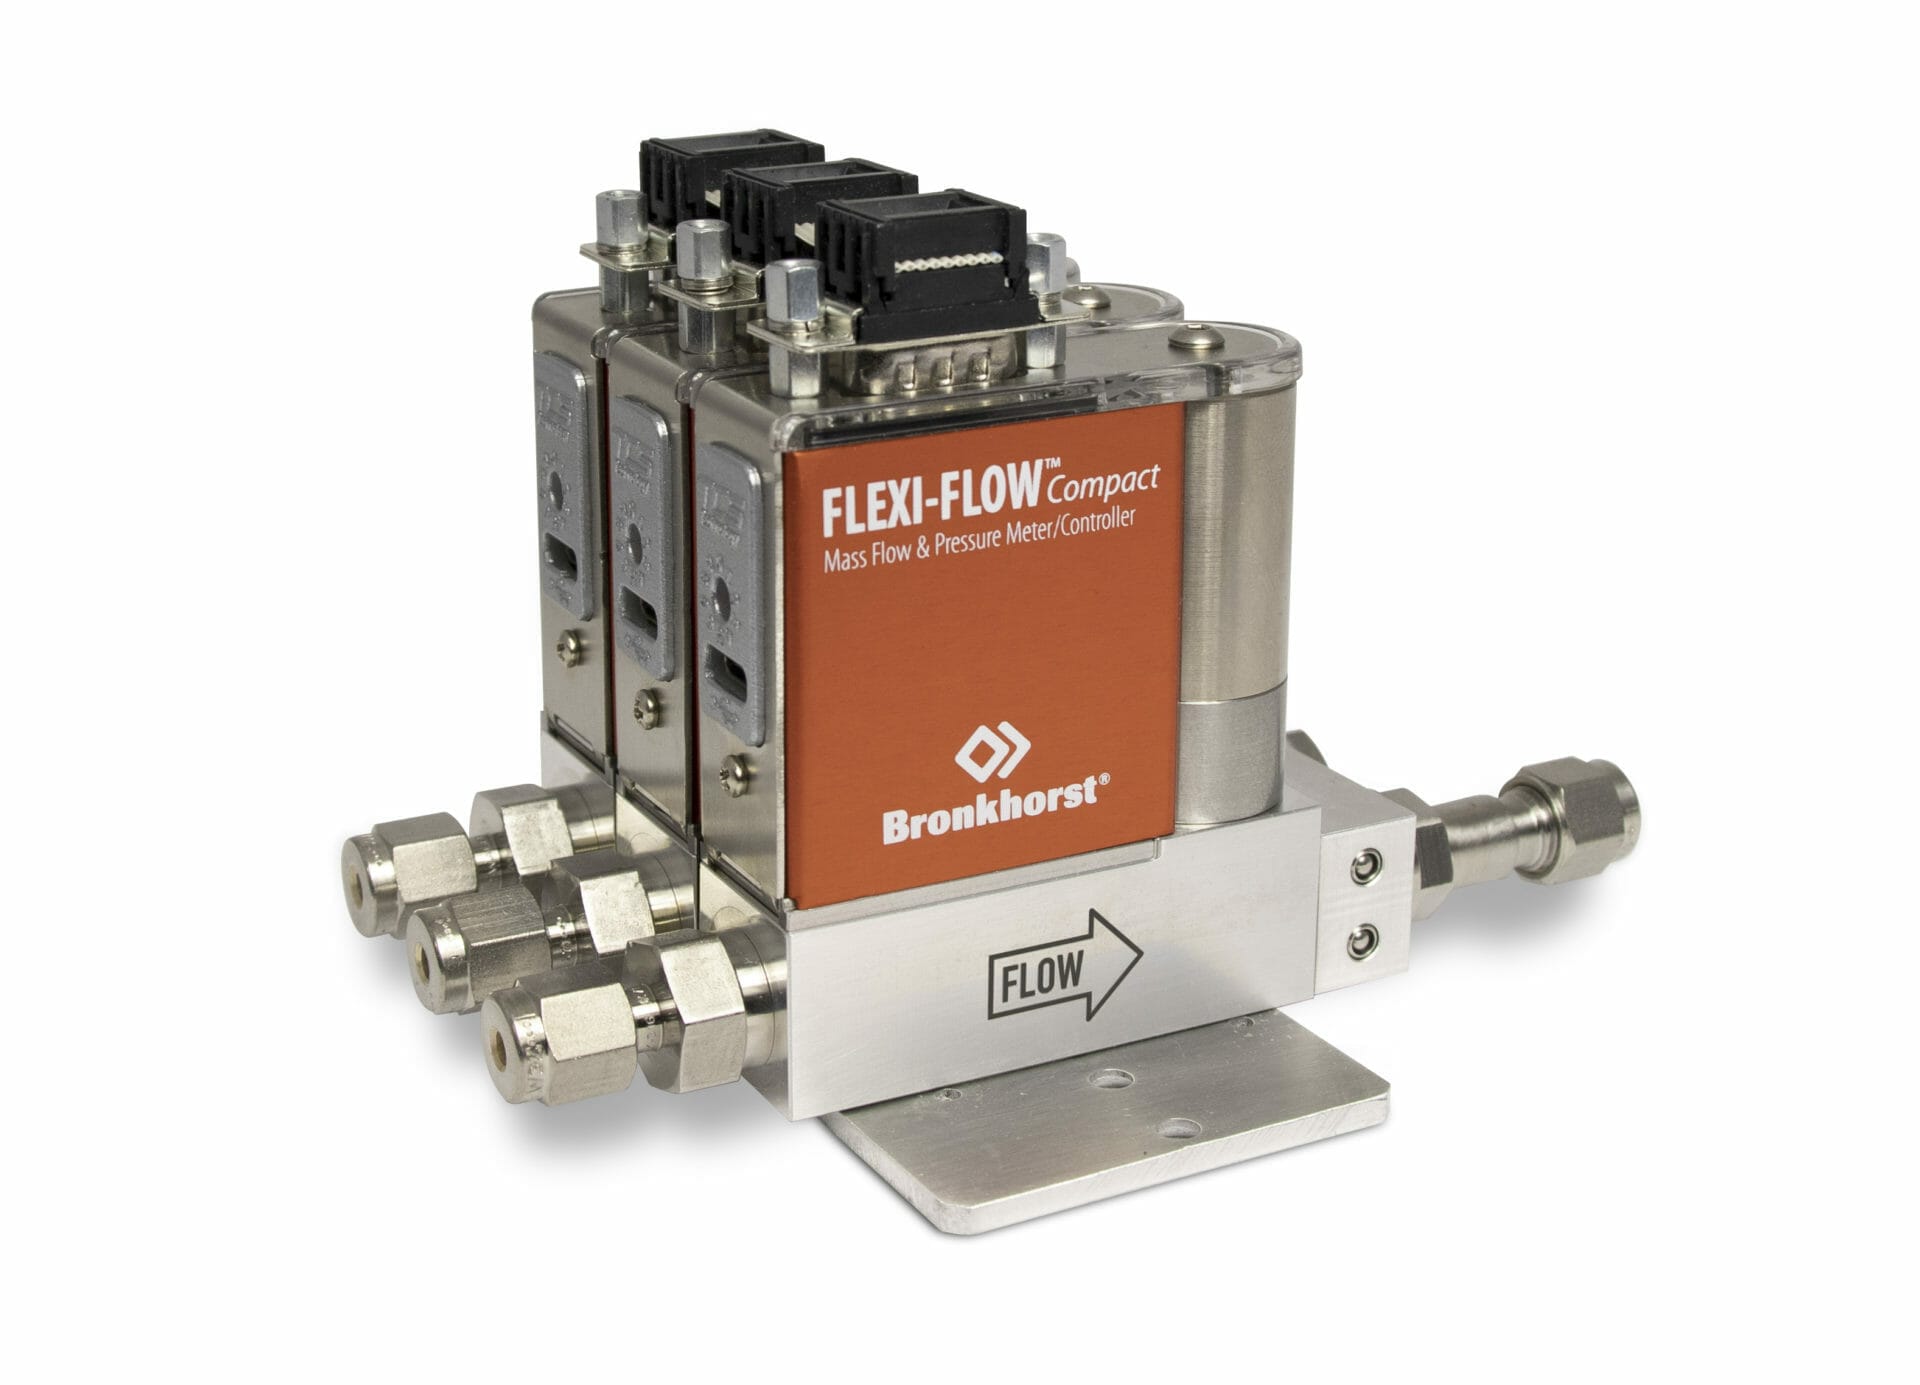 flexi-flow compact multi-channel